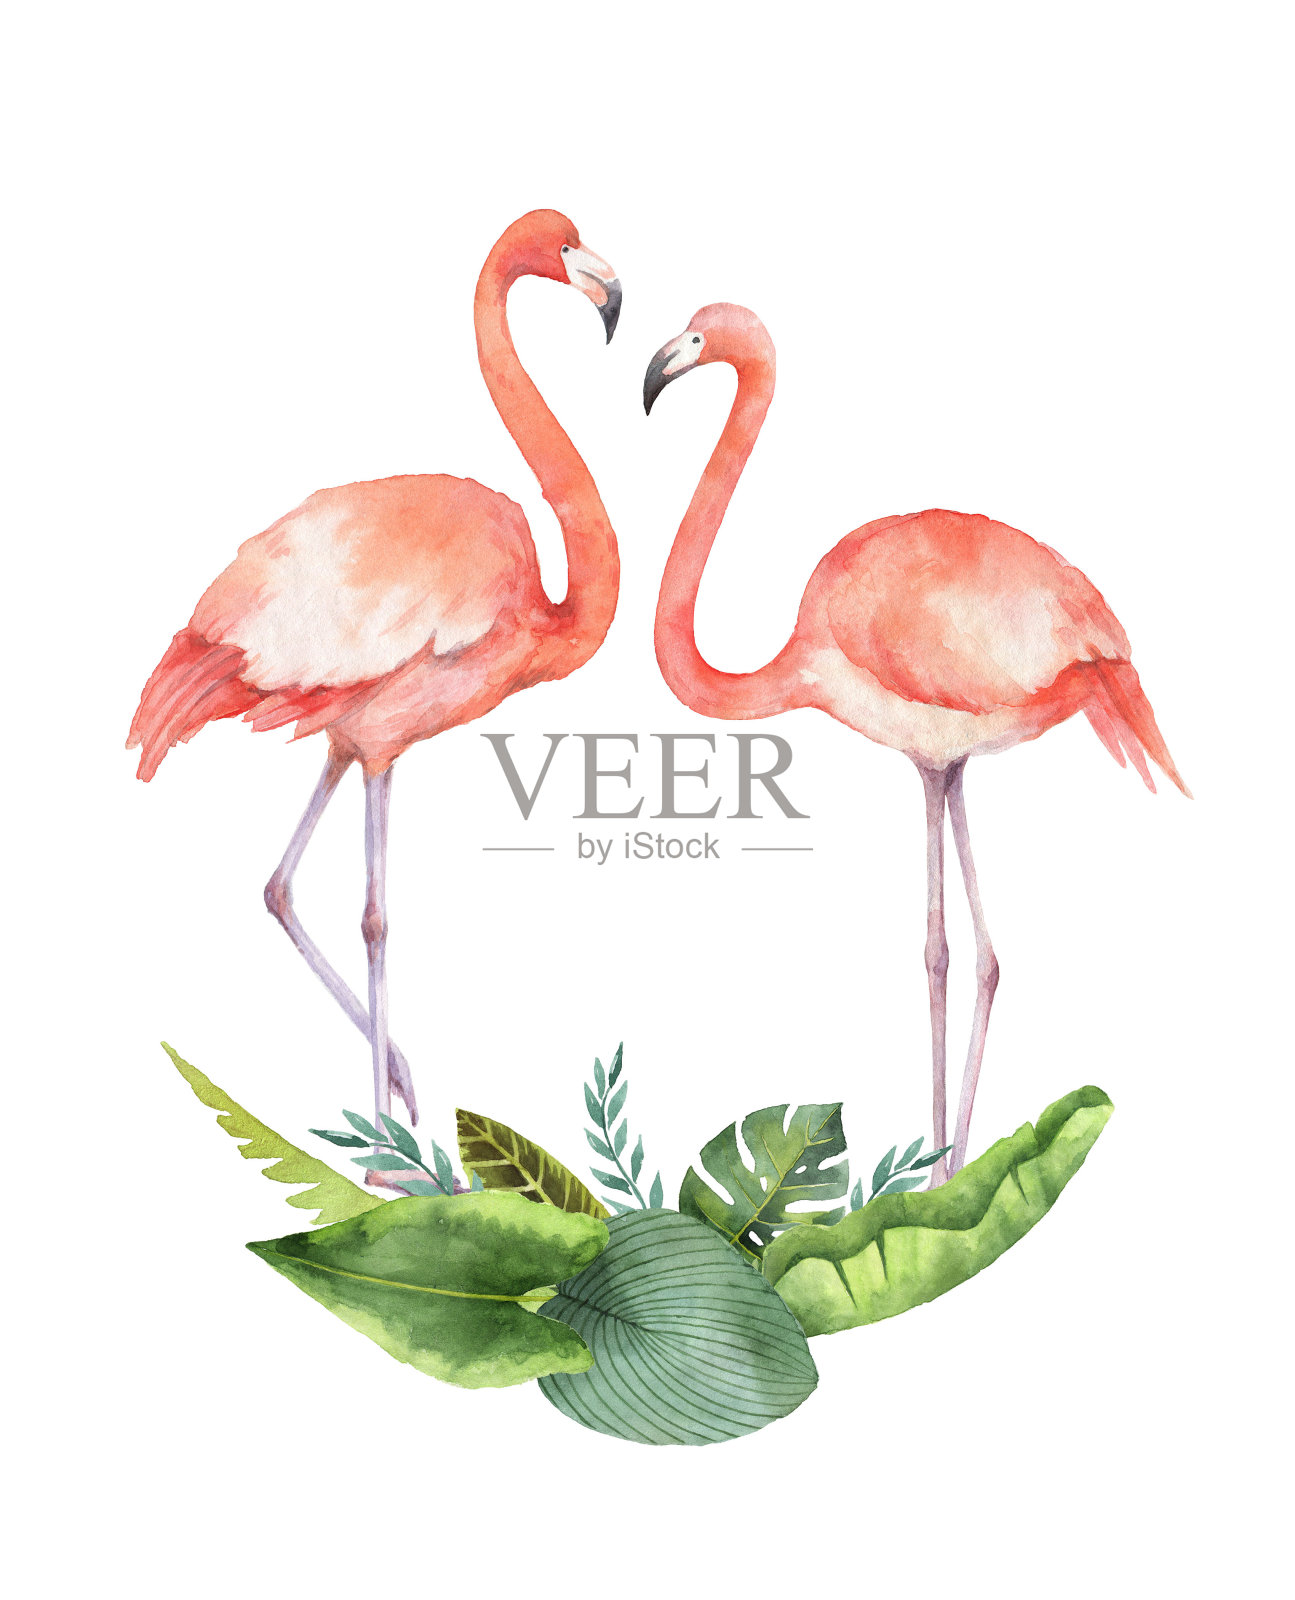 水彩画的热带树叶和粉红色火烈鸟孤立在白色的背景。插画图片素材